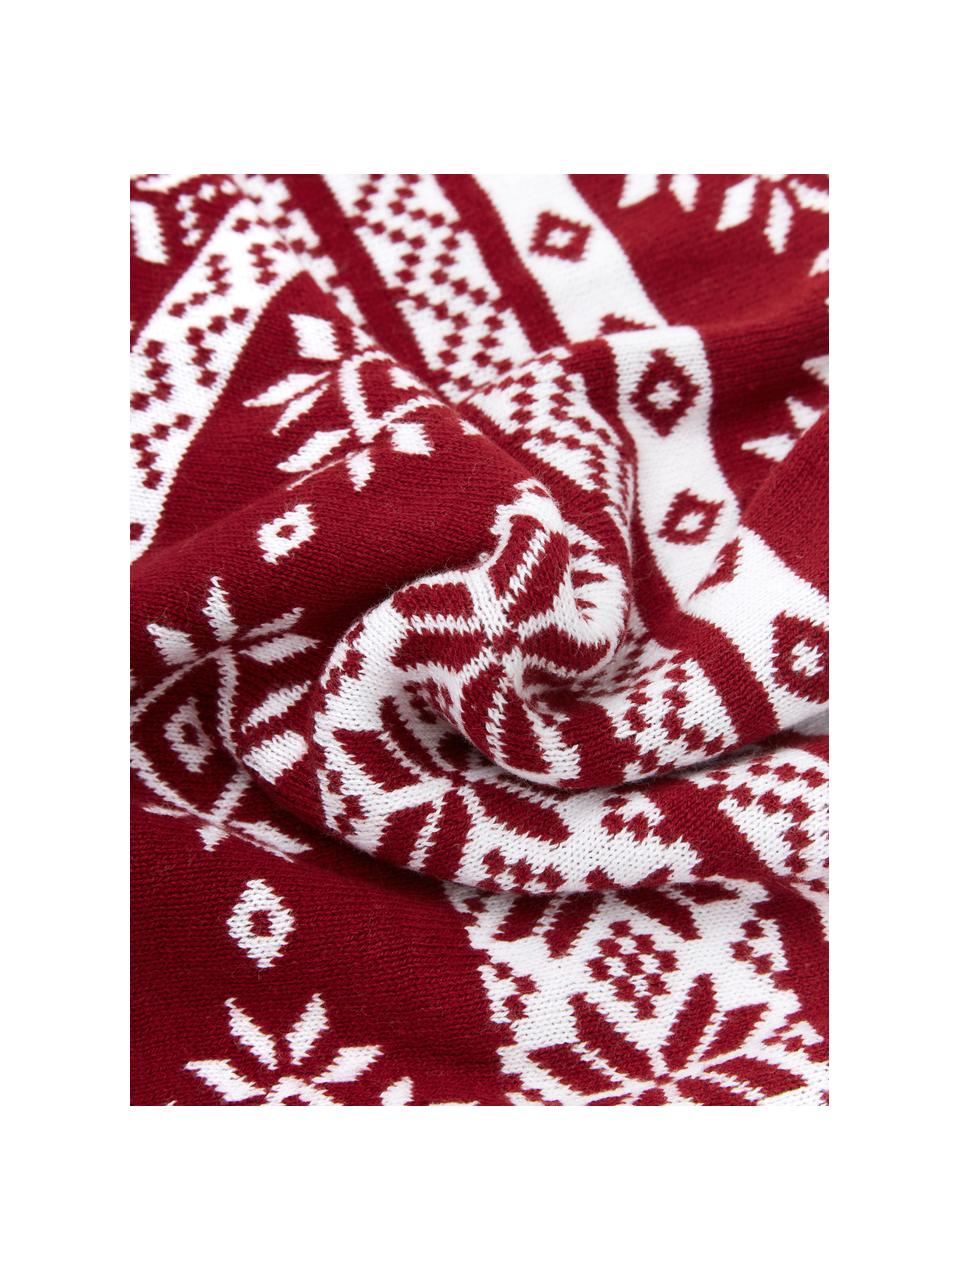 Feinstrick-Kissenhülle Frosty mit winterlichem Muster in Rot/Weiß, 100% Baumwolle, Dunkelrot, Cremeweiß, 30 x 50 cm